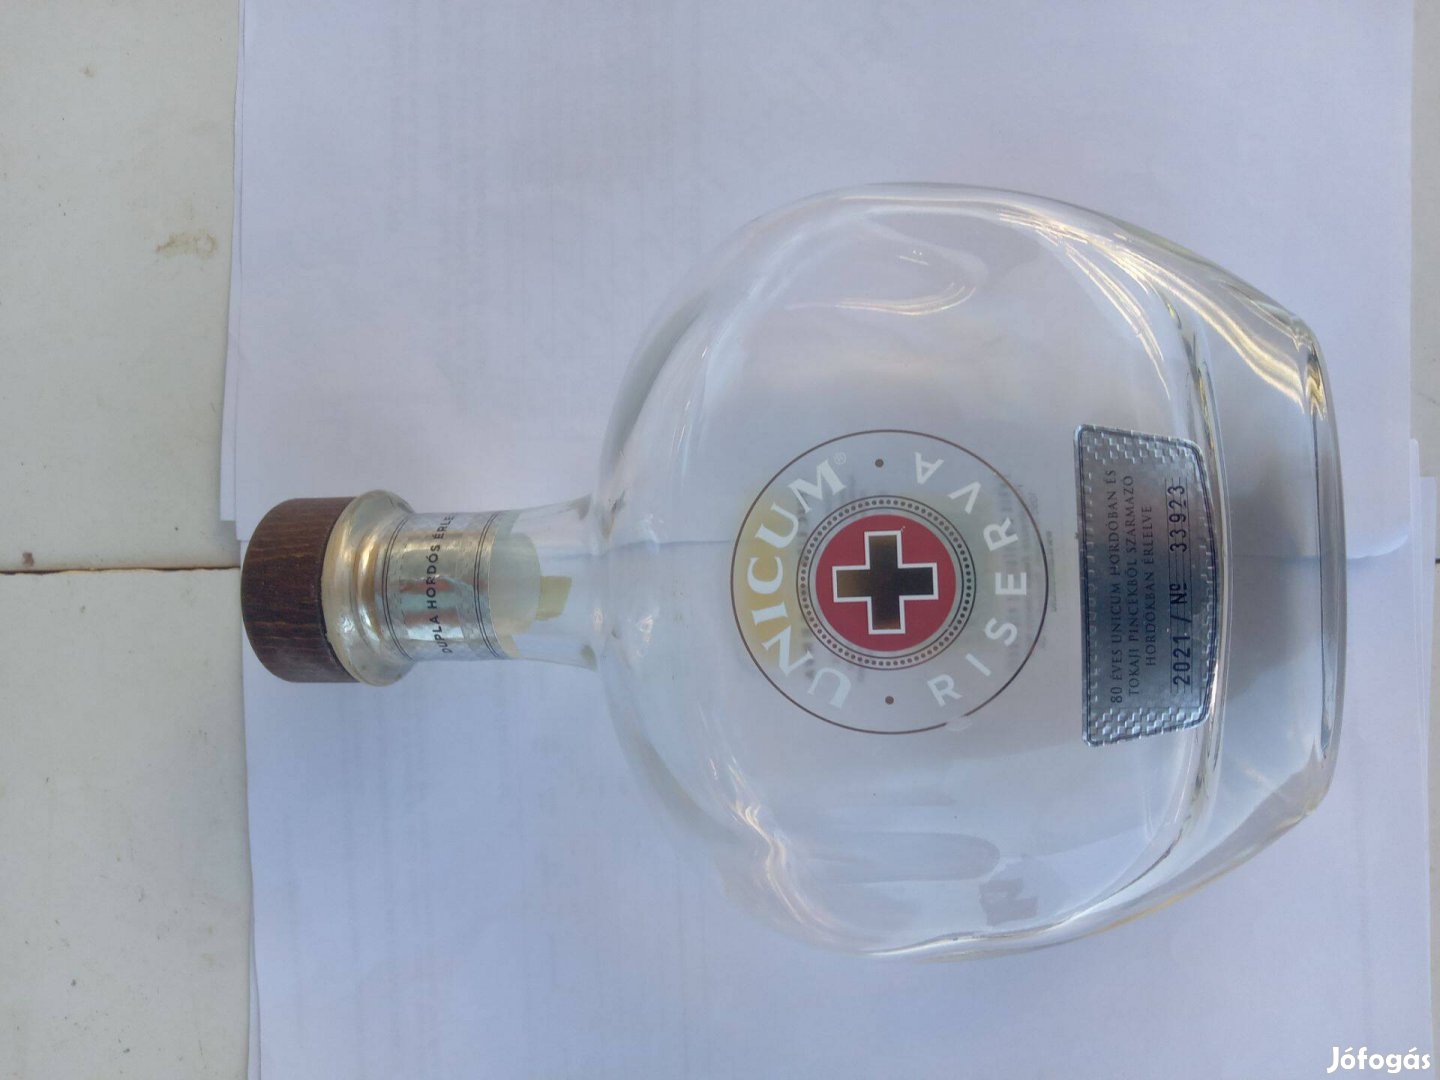 Unicum Riserva üveg a Zwack gyár 80 éves alapítására